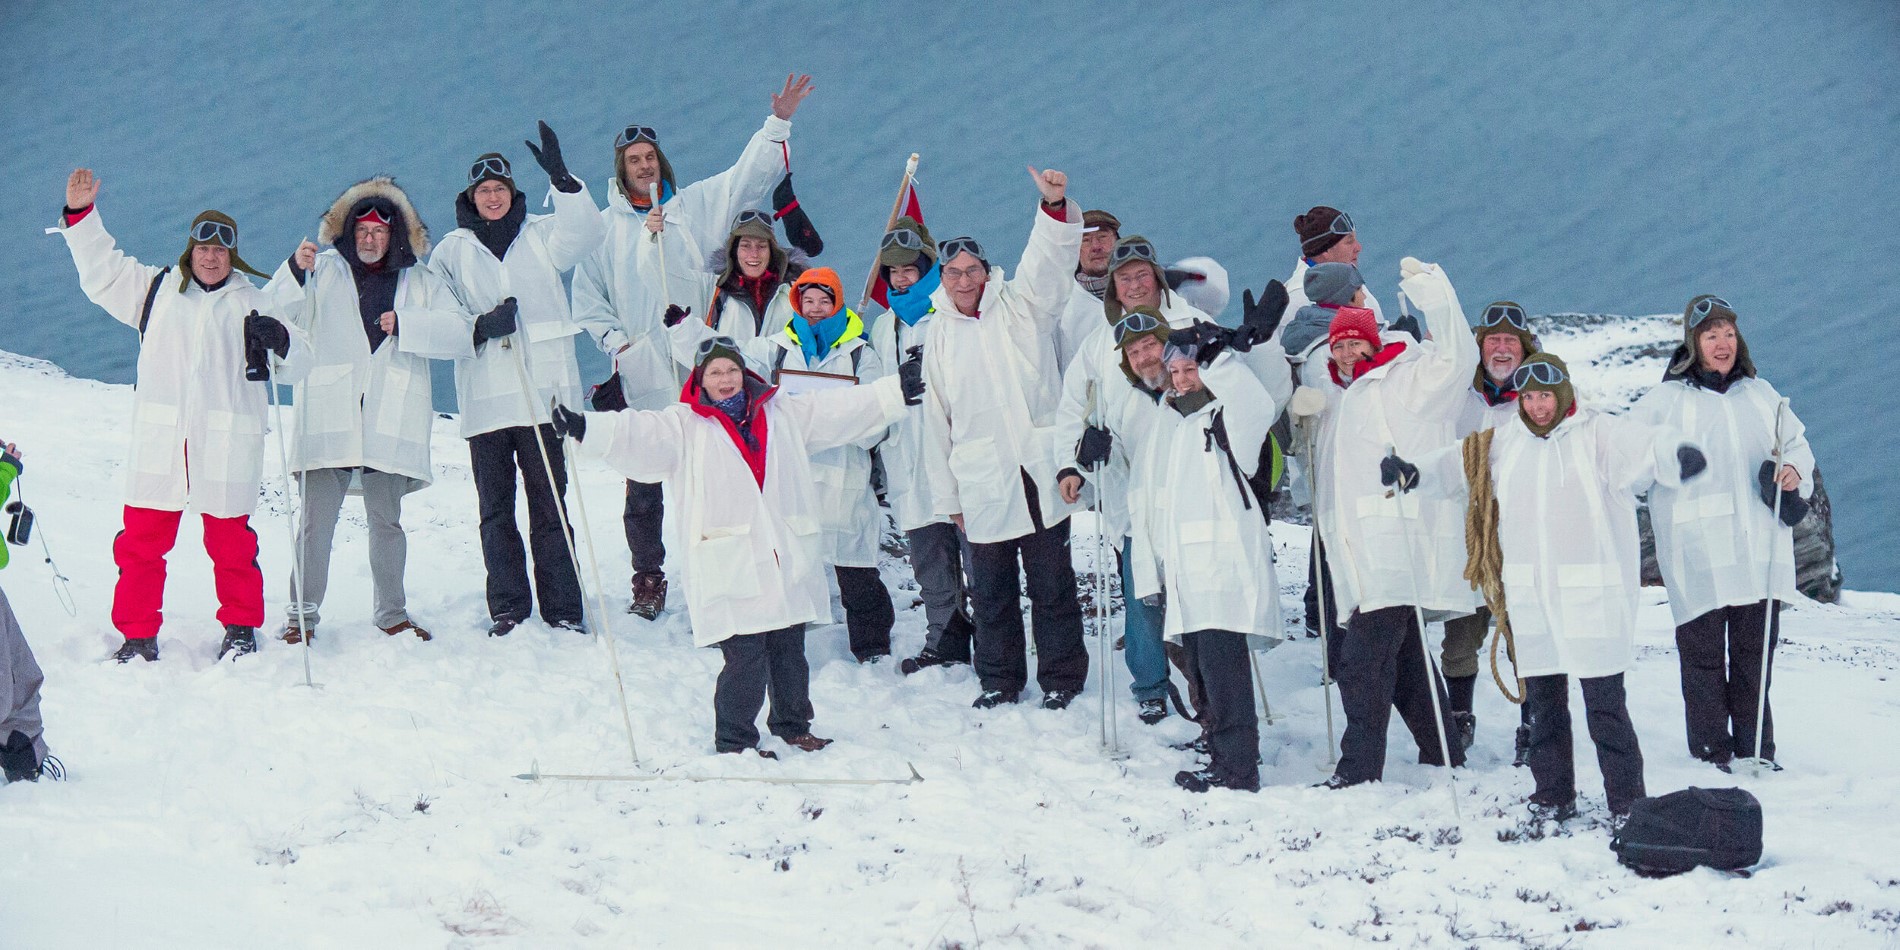 En gruppe mennesker som poserer for et bilde i snøen